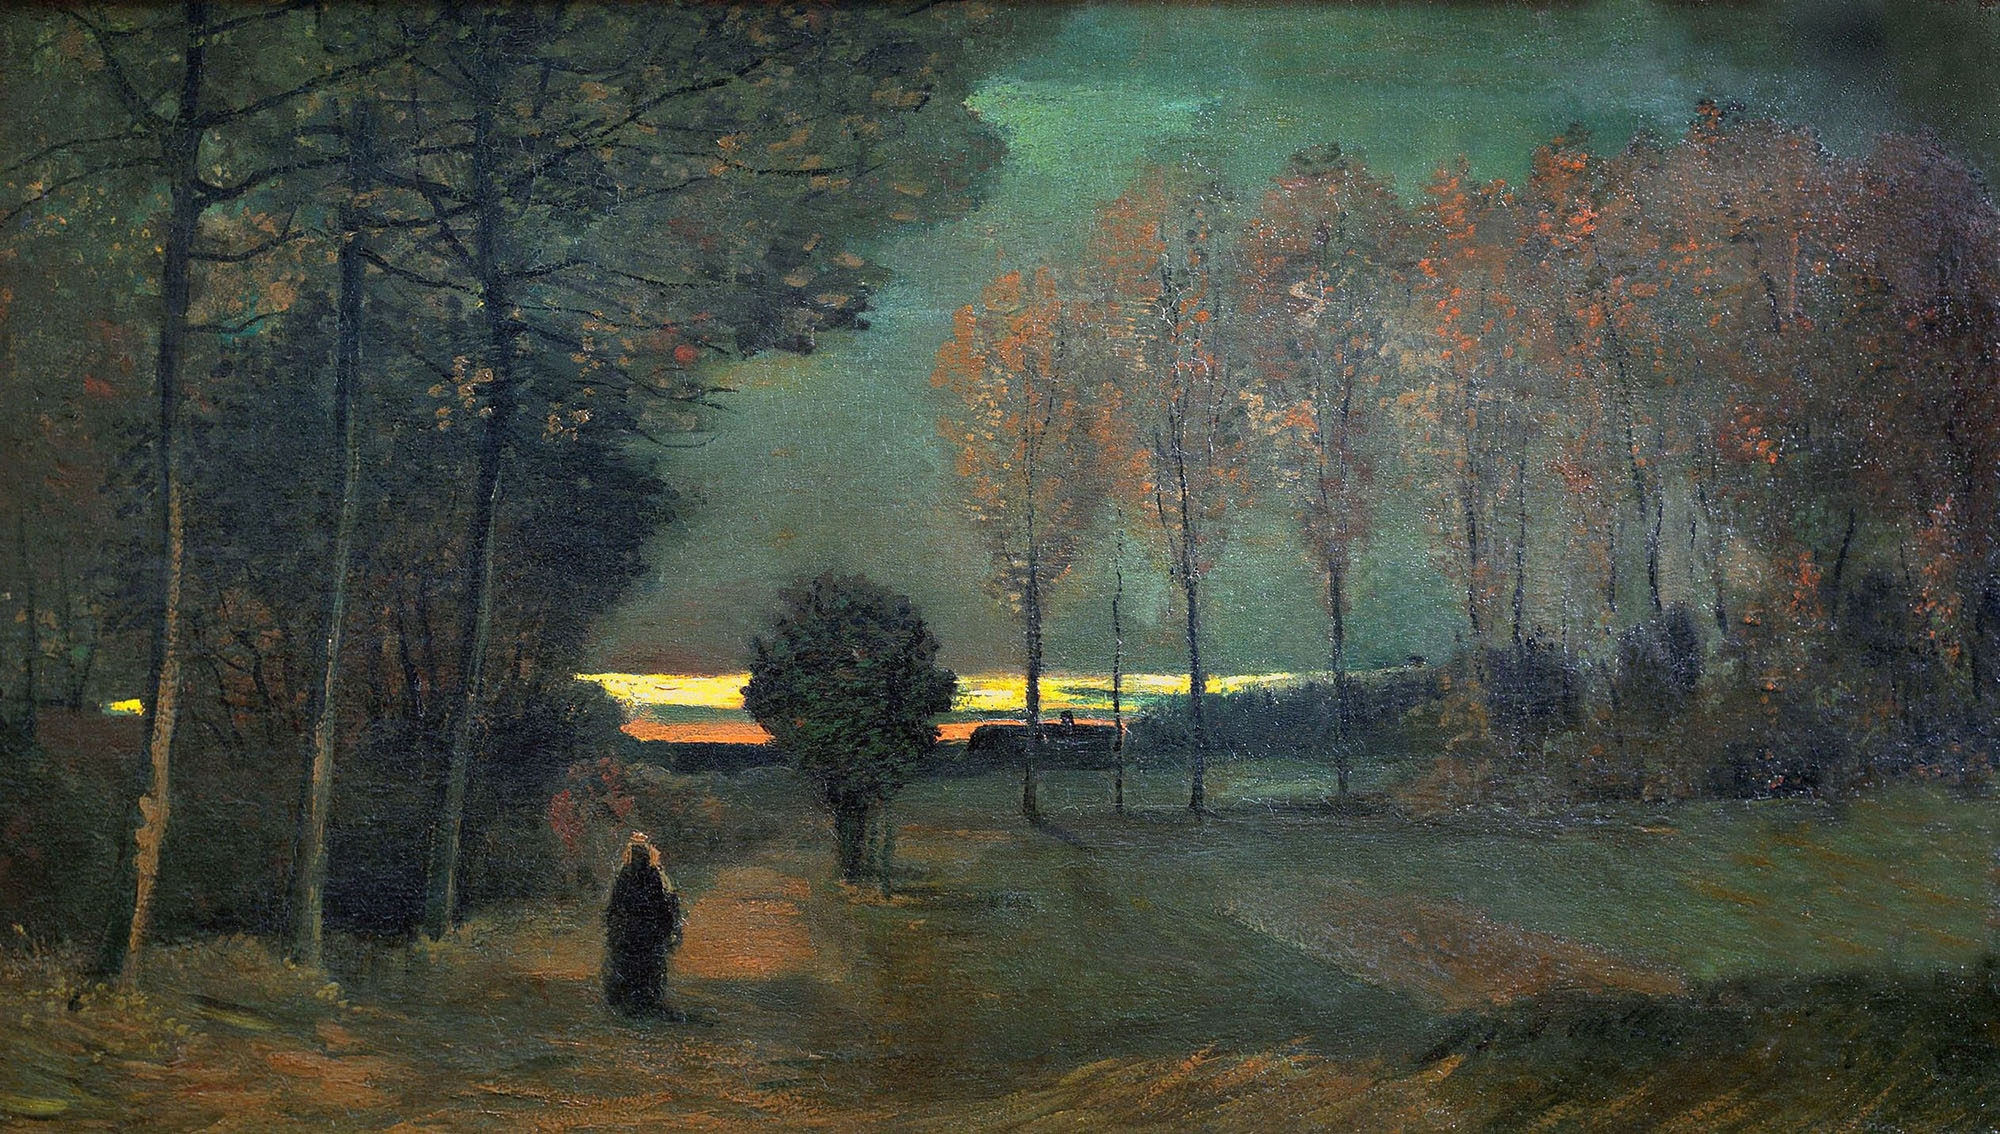 Винсент Ван Гог. "Осенний пейзаж в сумерки". 1885. Центральный музей, Утрехт.